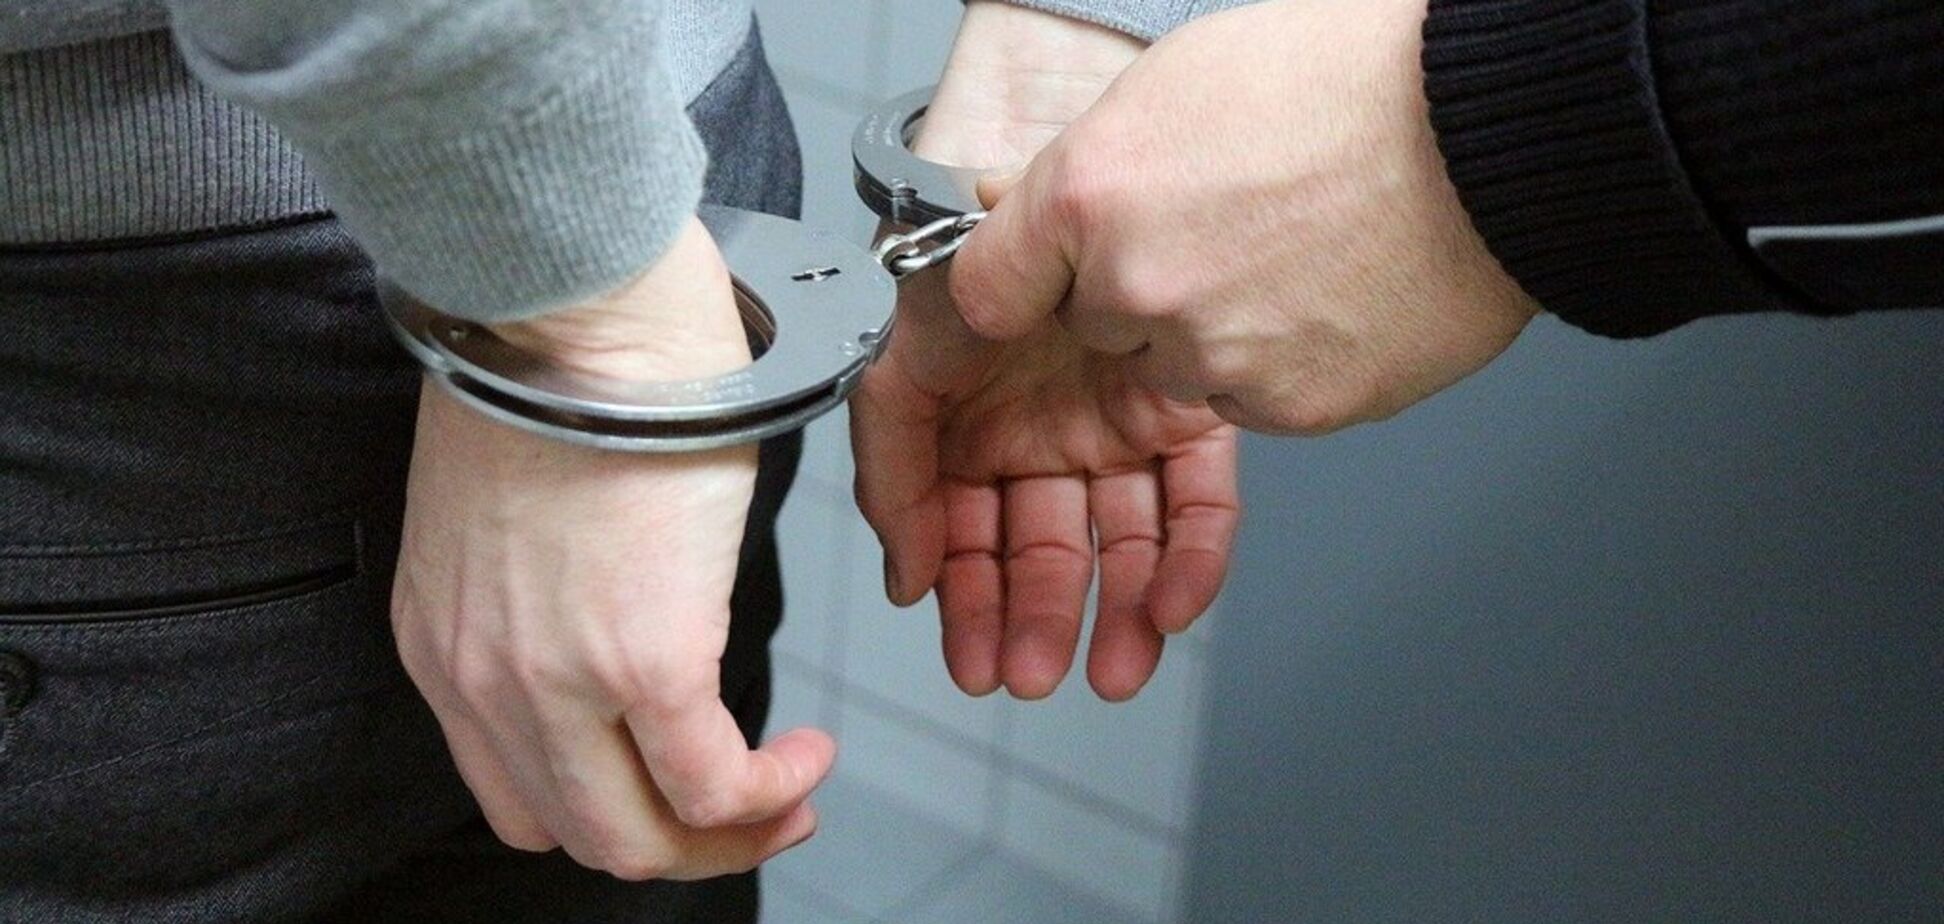 Хранил для собственного употребления: под Днепром задержали мужчину с метамфетамином